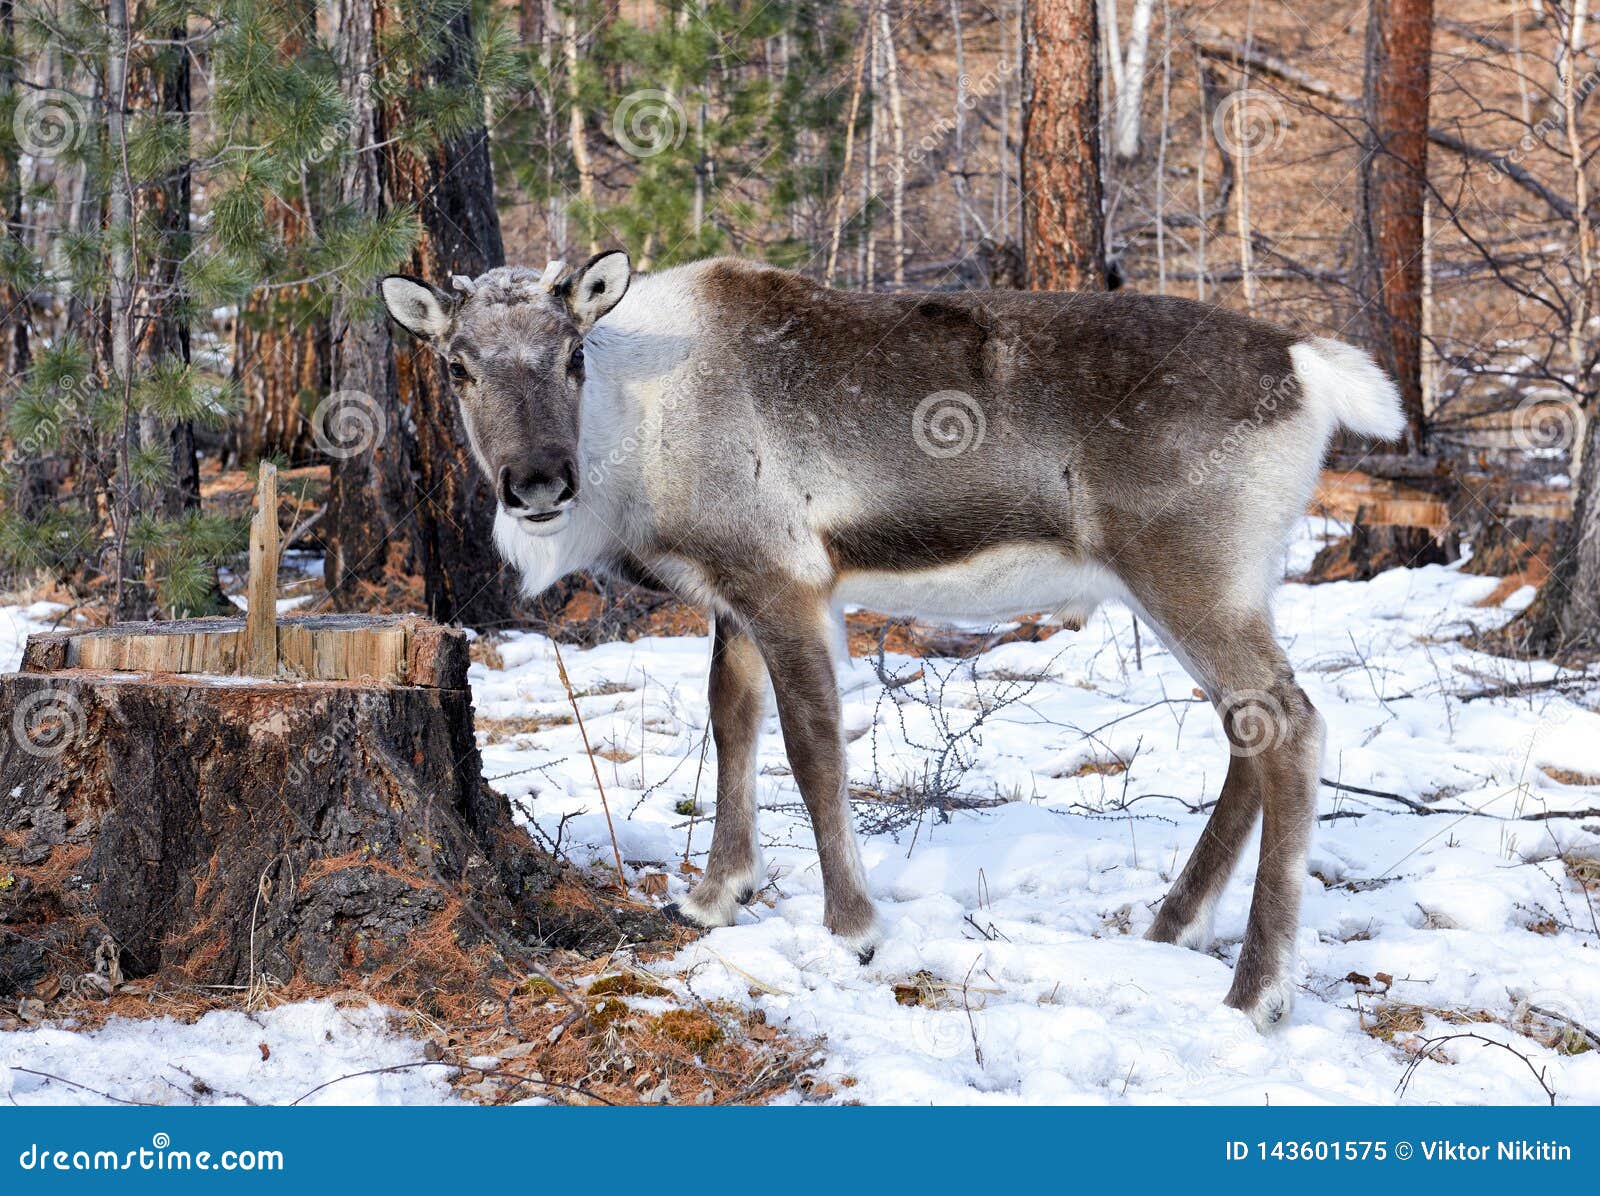 young reindeer. tofalar forest subspecies